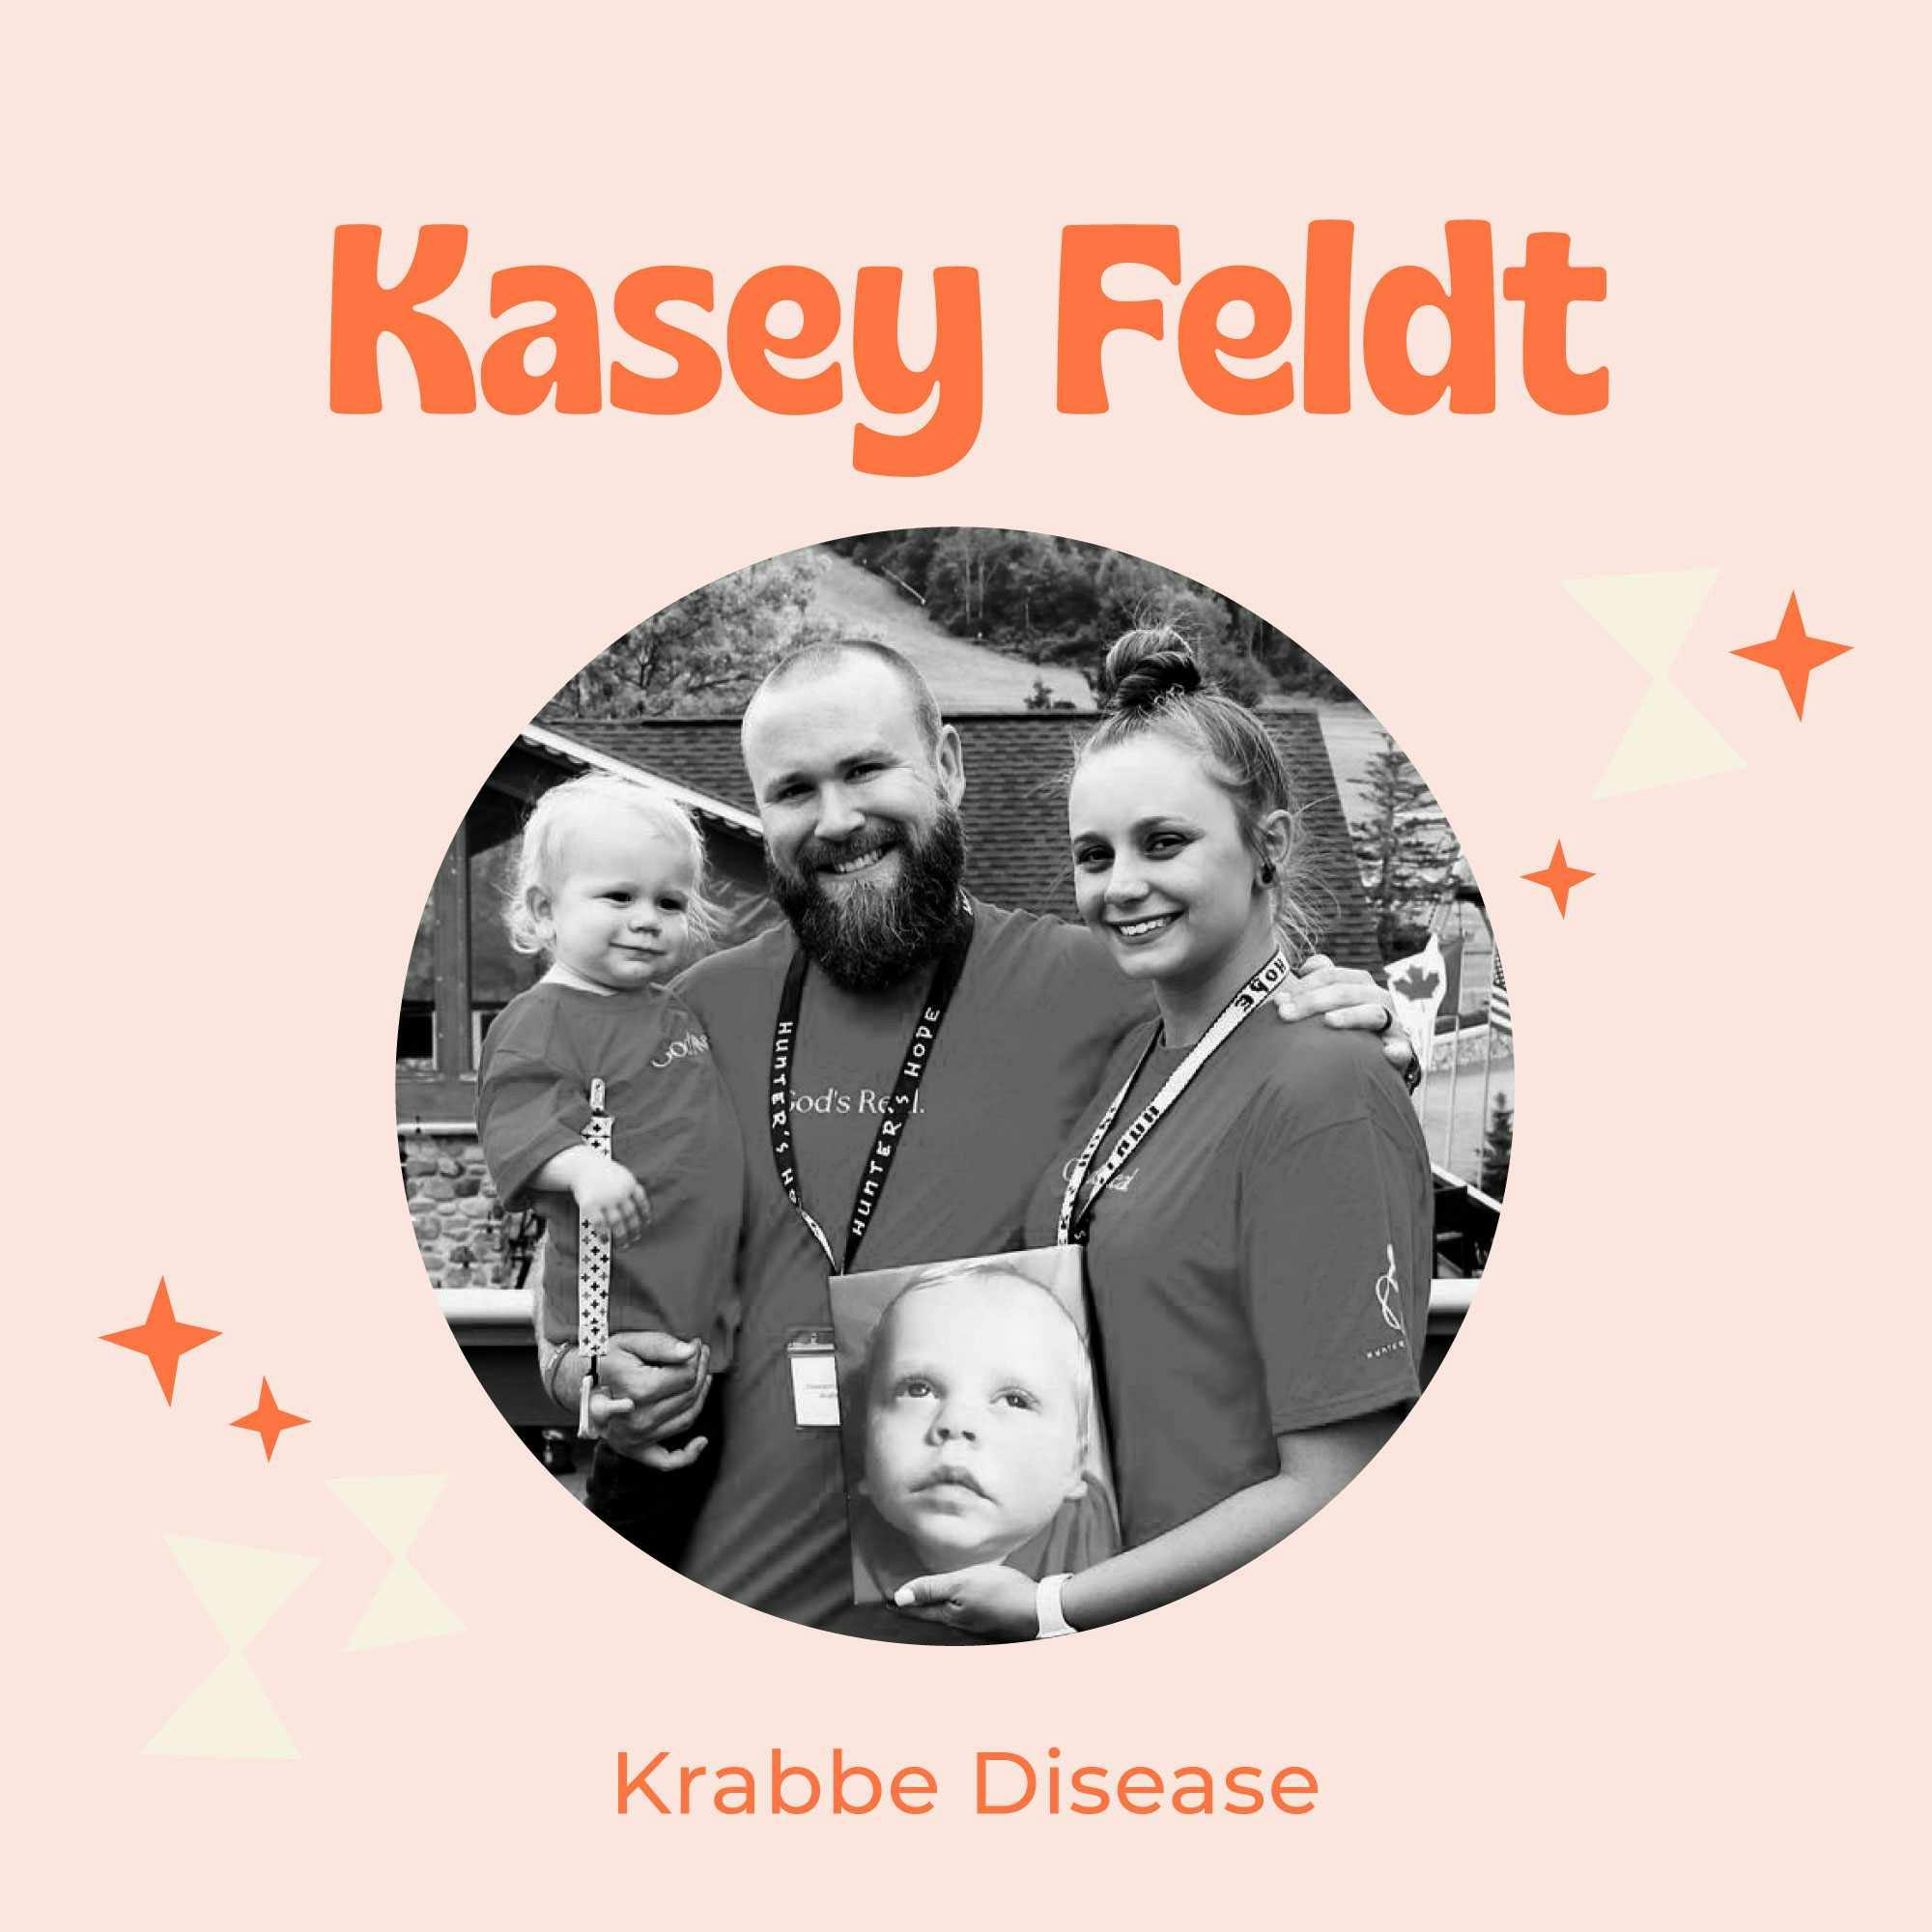 Krabbe Disease with Kasey Feldt